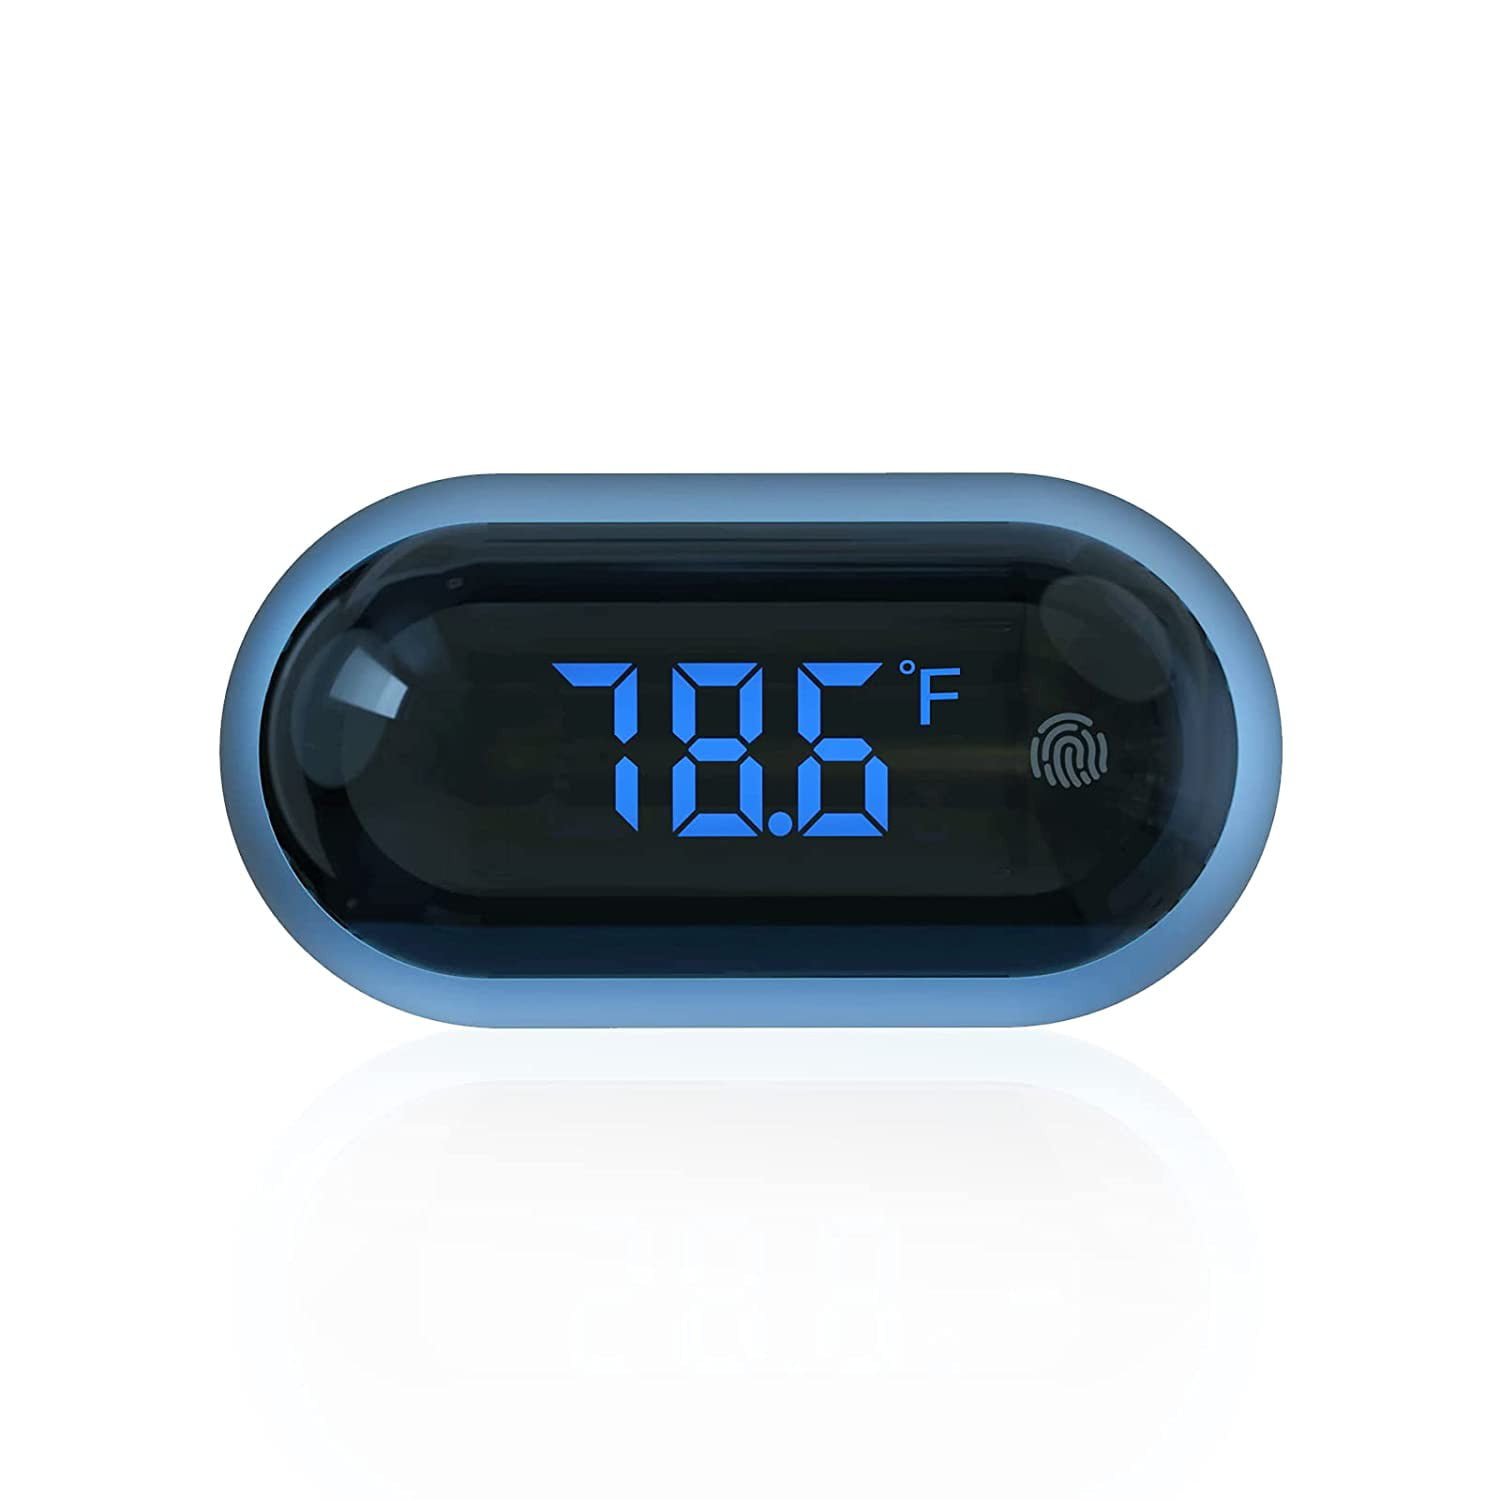 LCD Digital Fish Aquarium Electronic Thermometer Waterproof Temperature Meter 